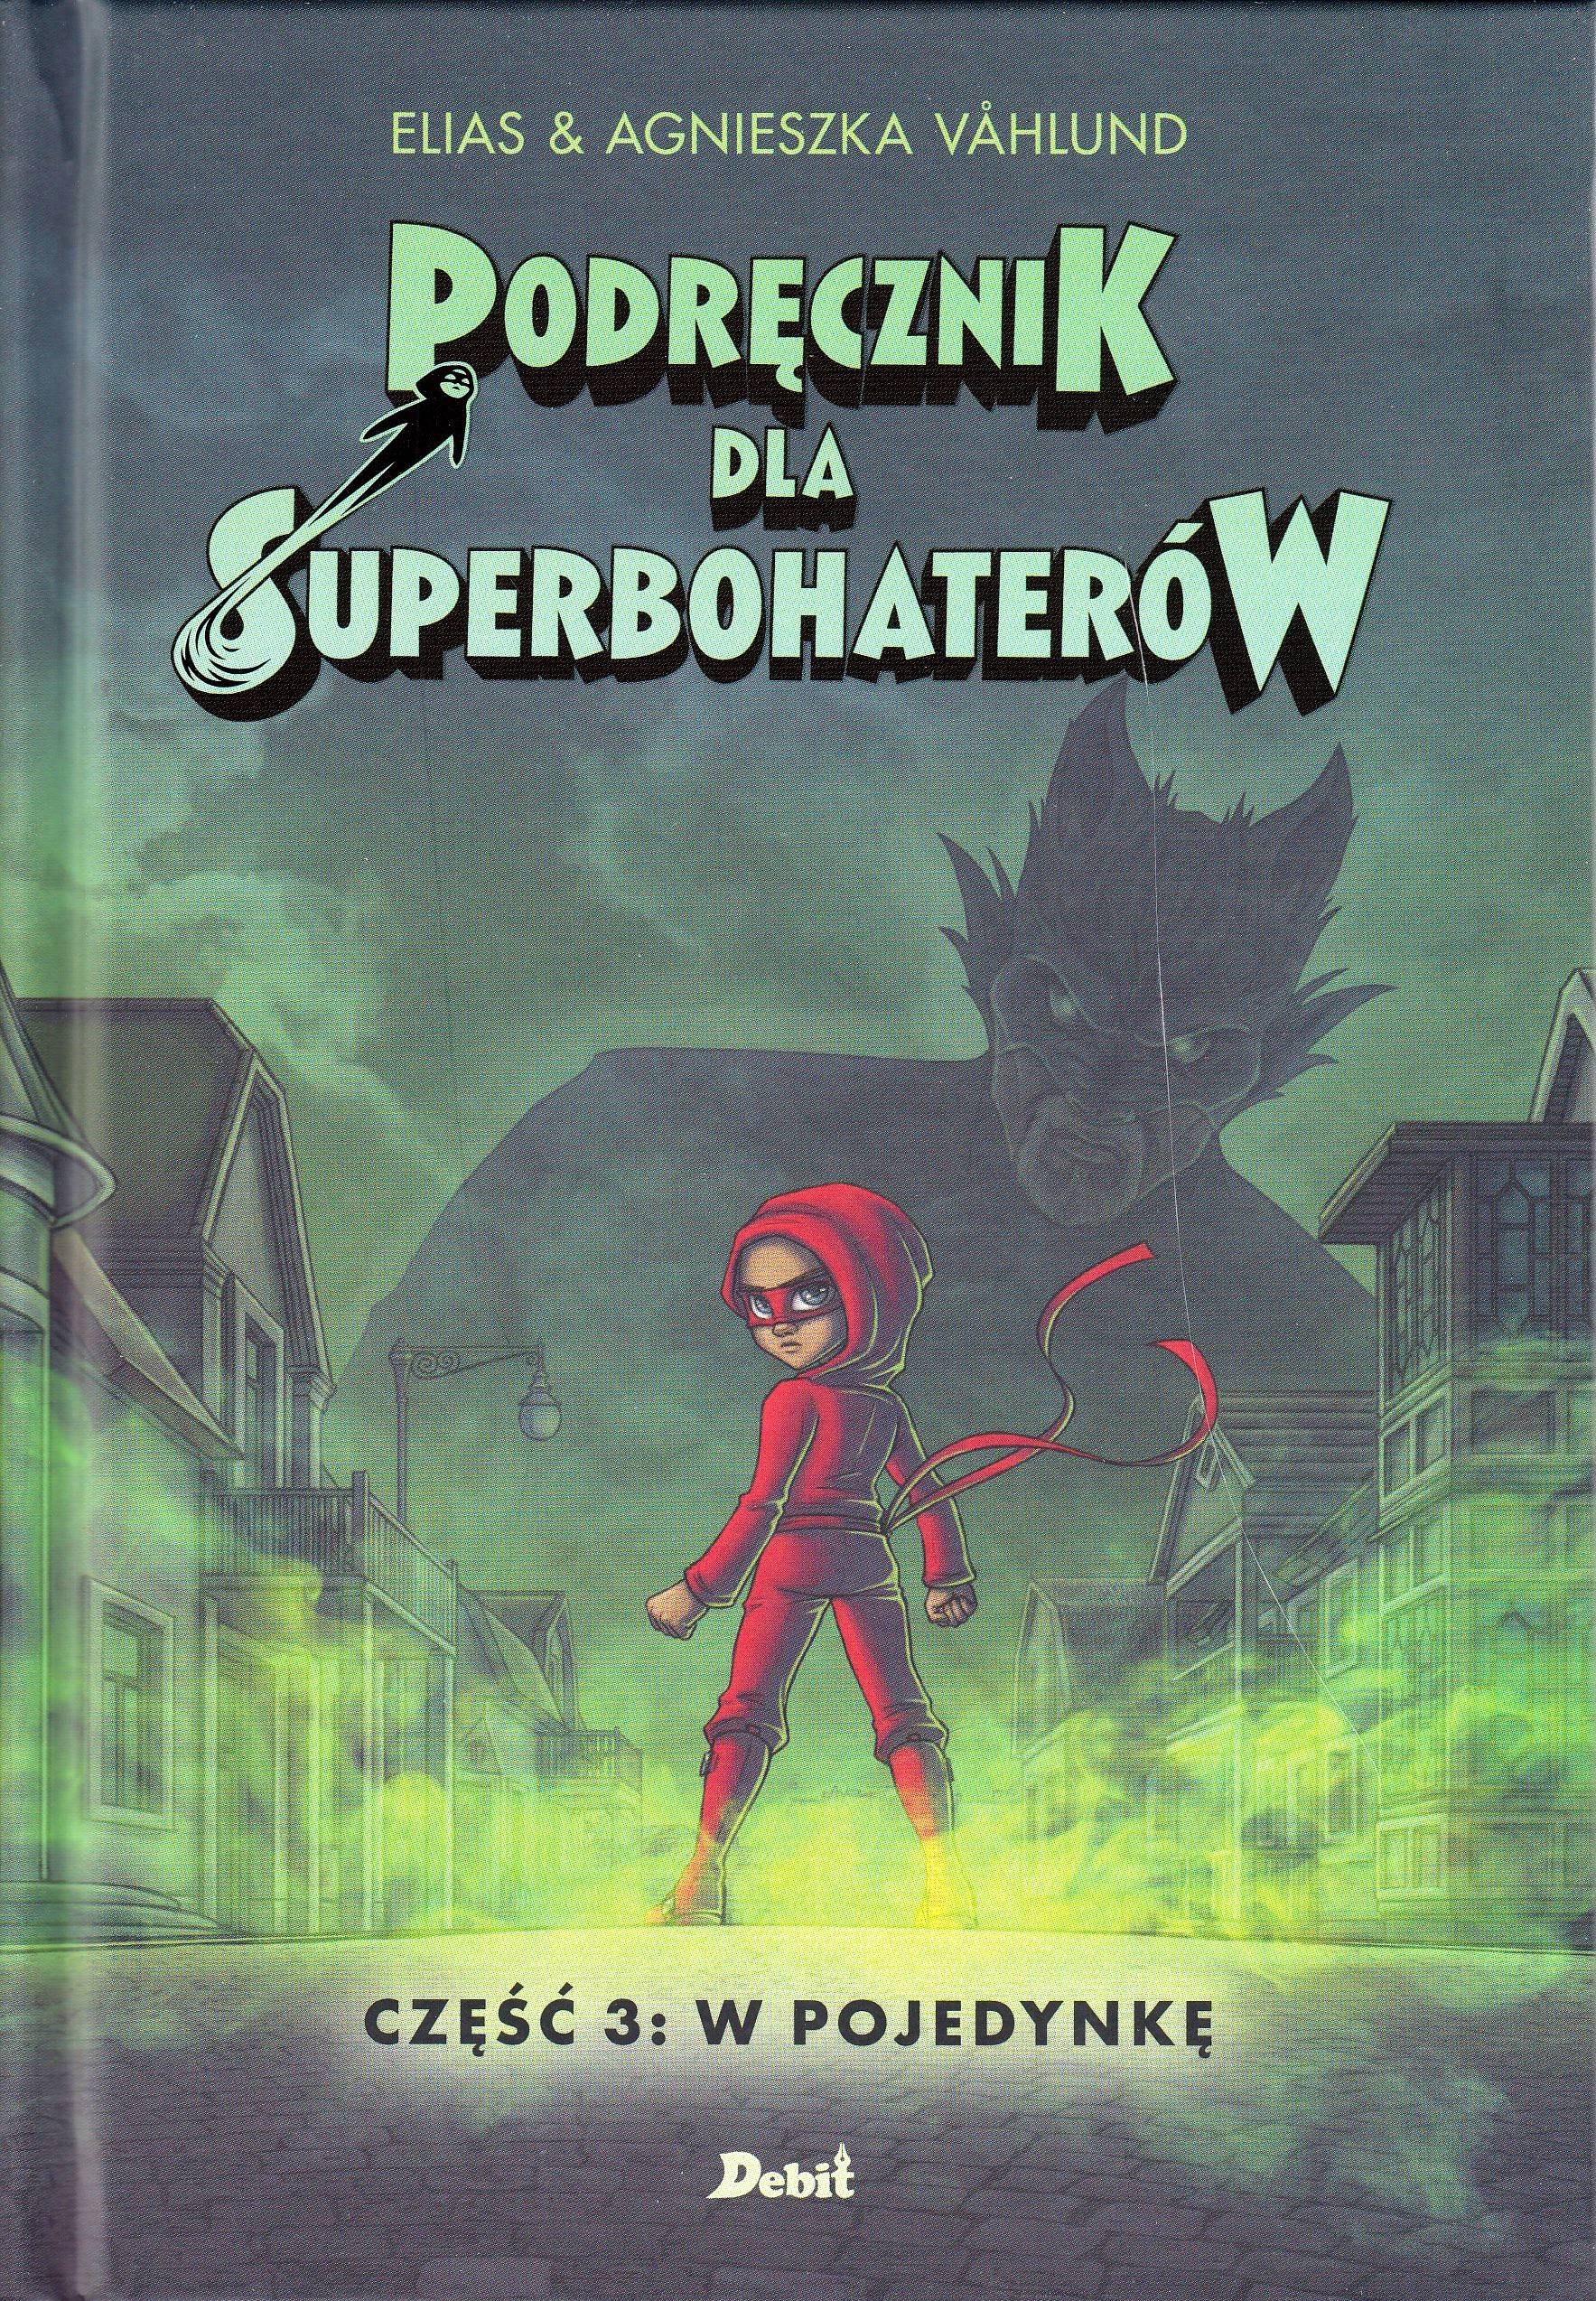 Podręcznik dla superbohaterów. Część 3: W pojedynkę